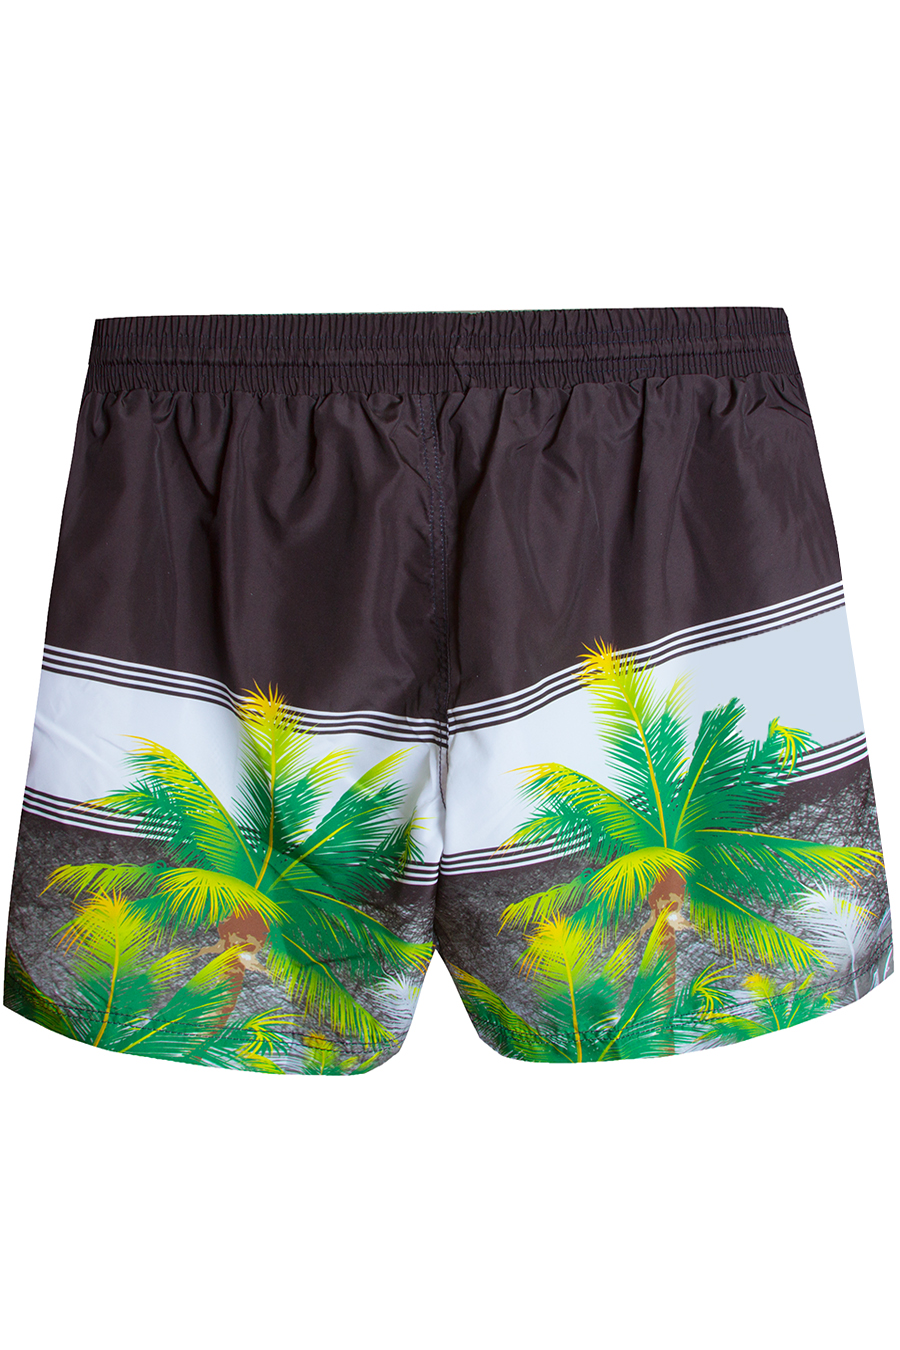 Пляжные шорты OLSER с пальмами большого размера